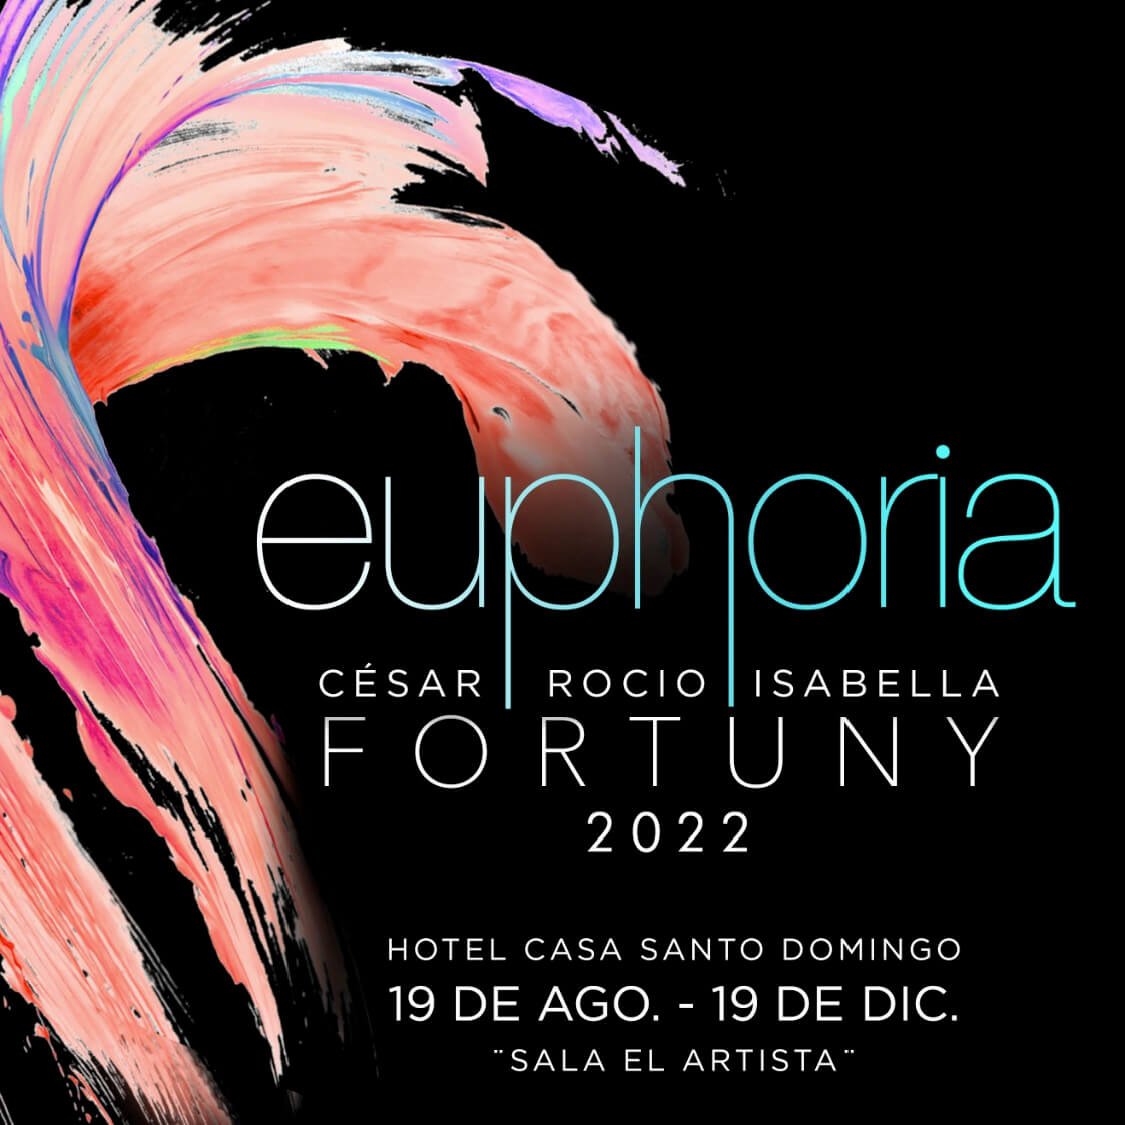 CATALOGO FORTUNY EXPO EUPHORIA 2022